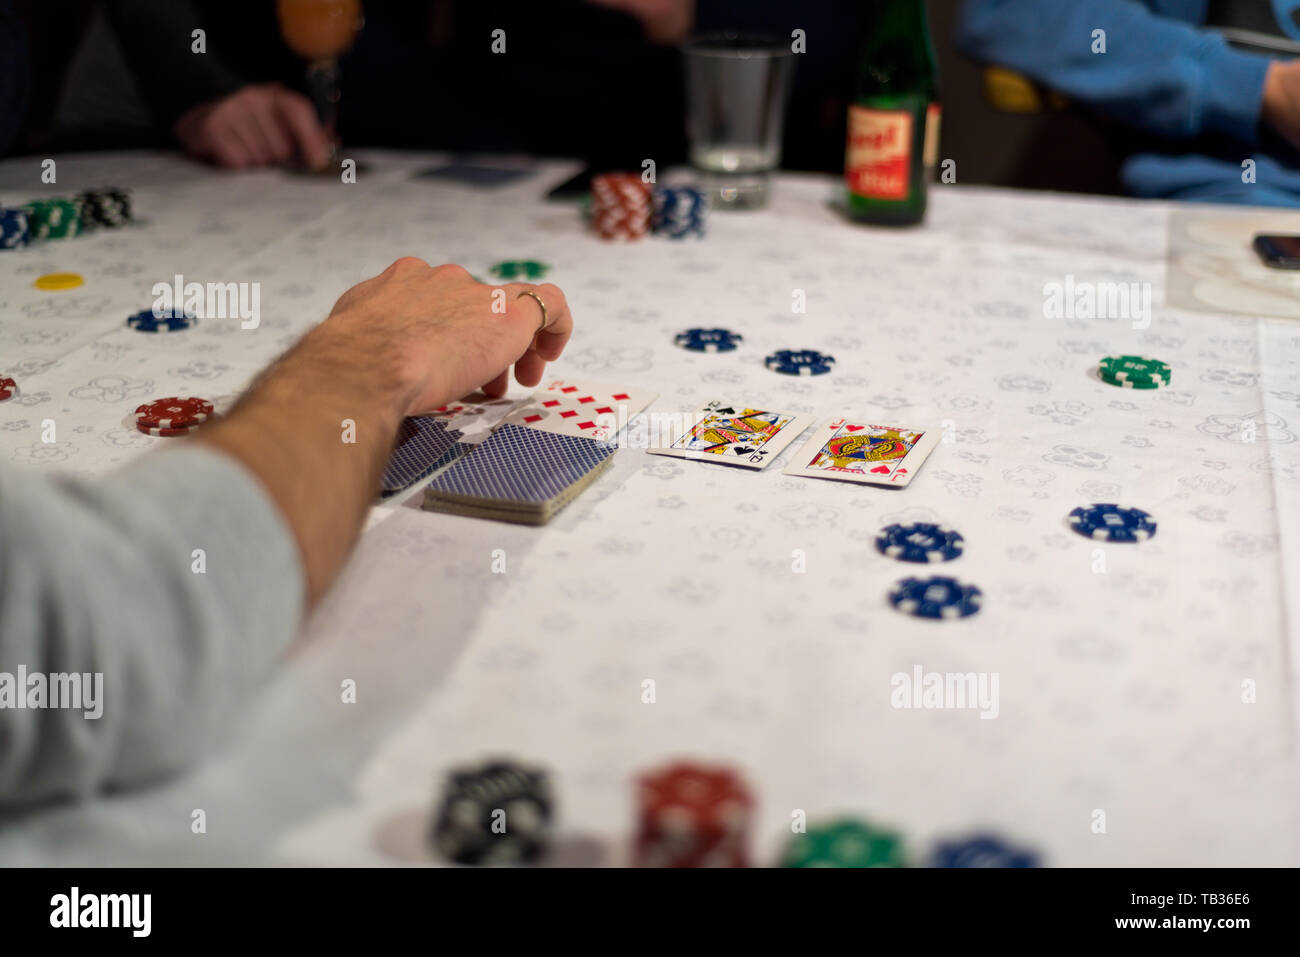 Texas Hold'em poker juego, el dealer revela las cartas comunitarias, después de que las apuestas han sido colocados. Foto de stock